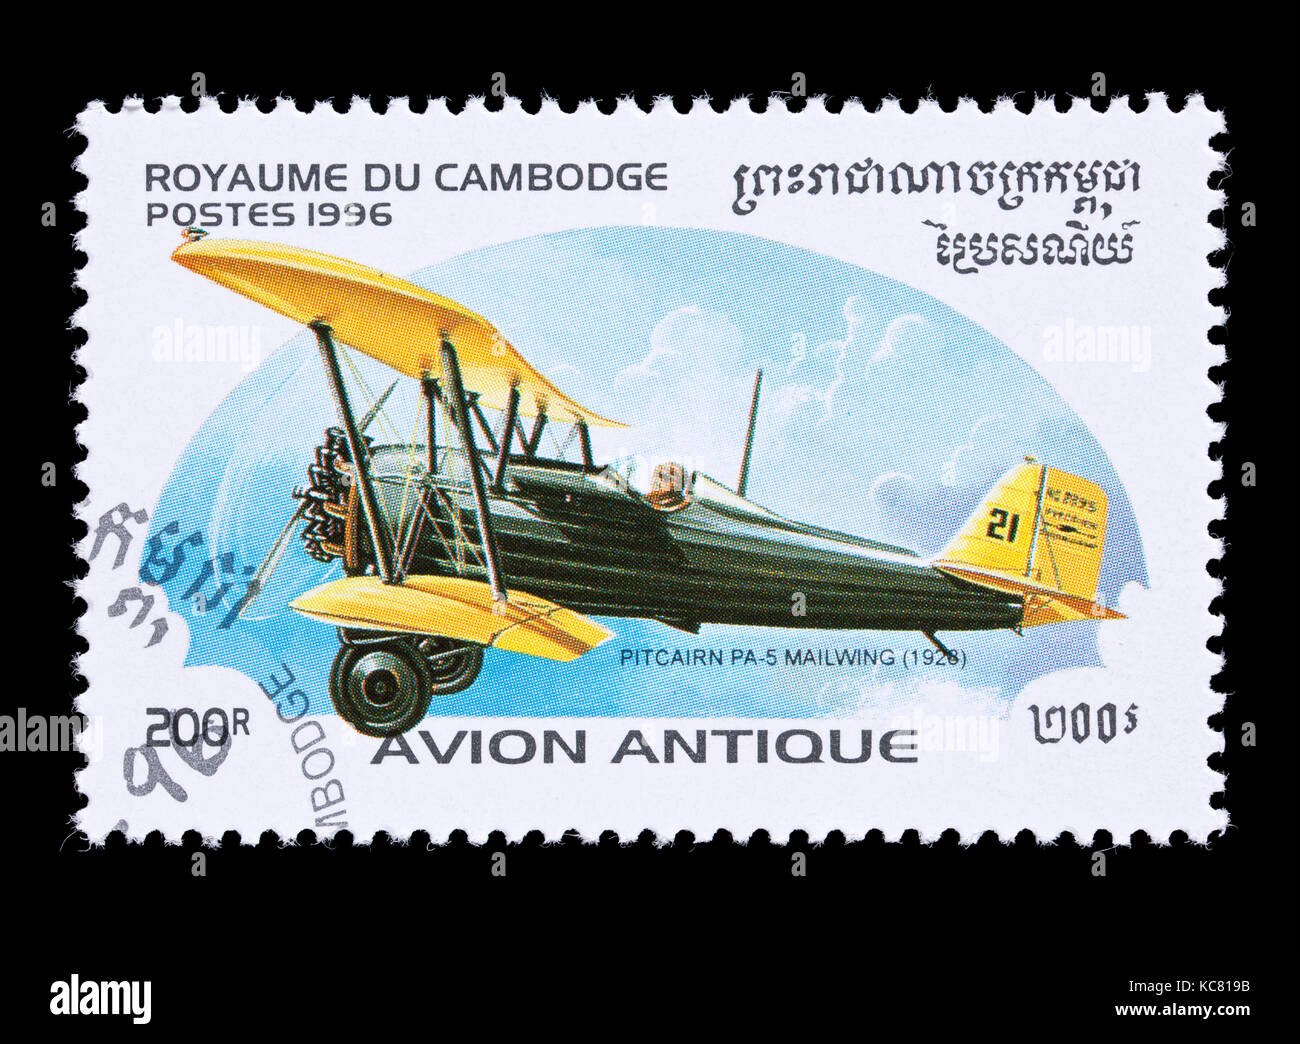 Francobollo da Cambogia raffigurante un Pitcairn PA-5 mailwing biplano dal 1926. Foto Stock